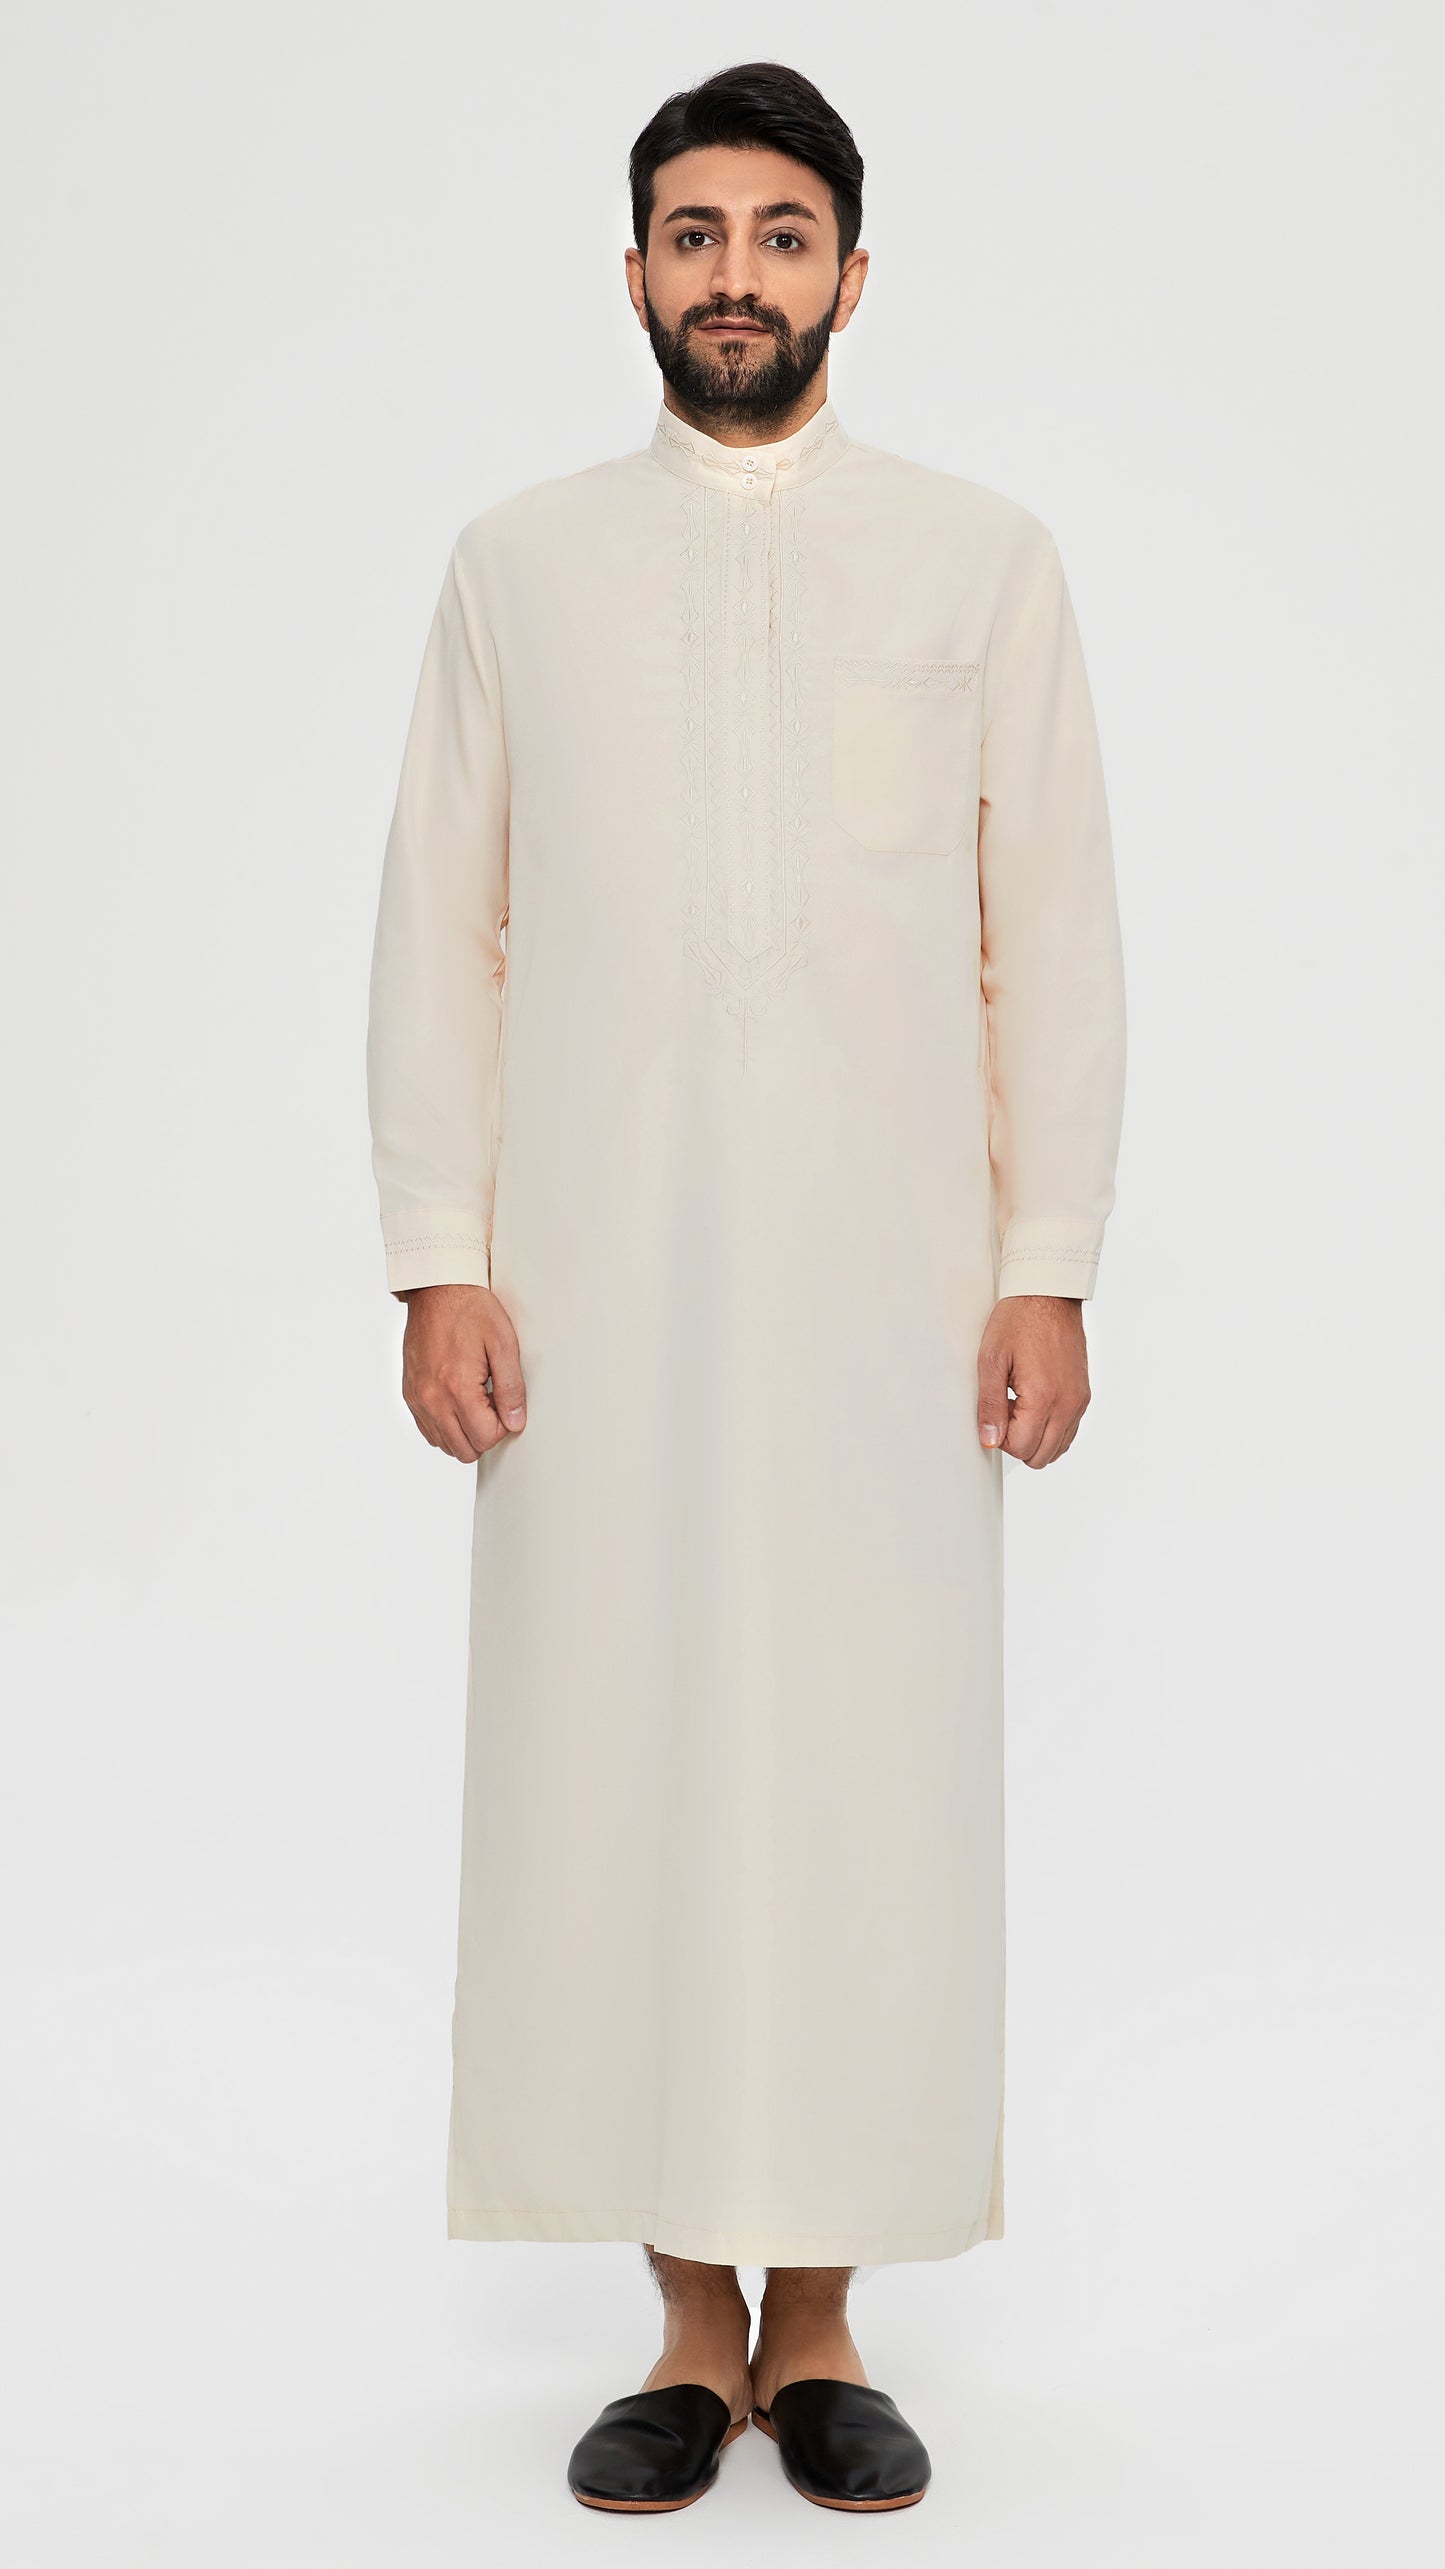 Qamis - Marrone Saudita con ricamo della cravatta.